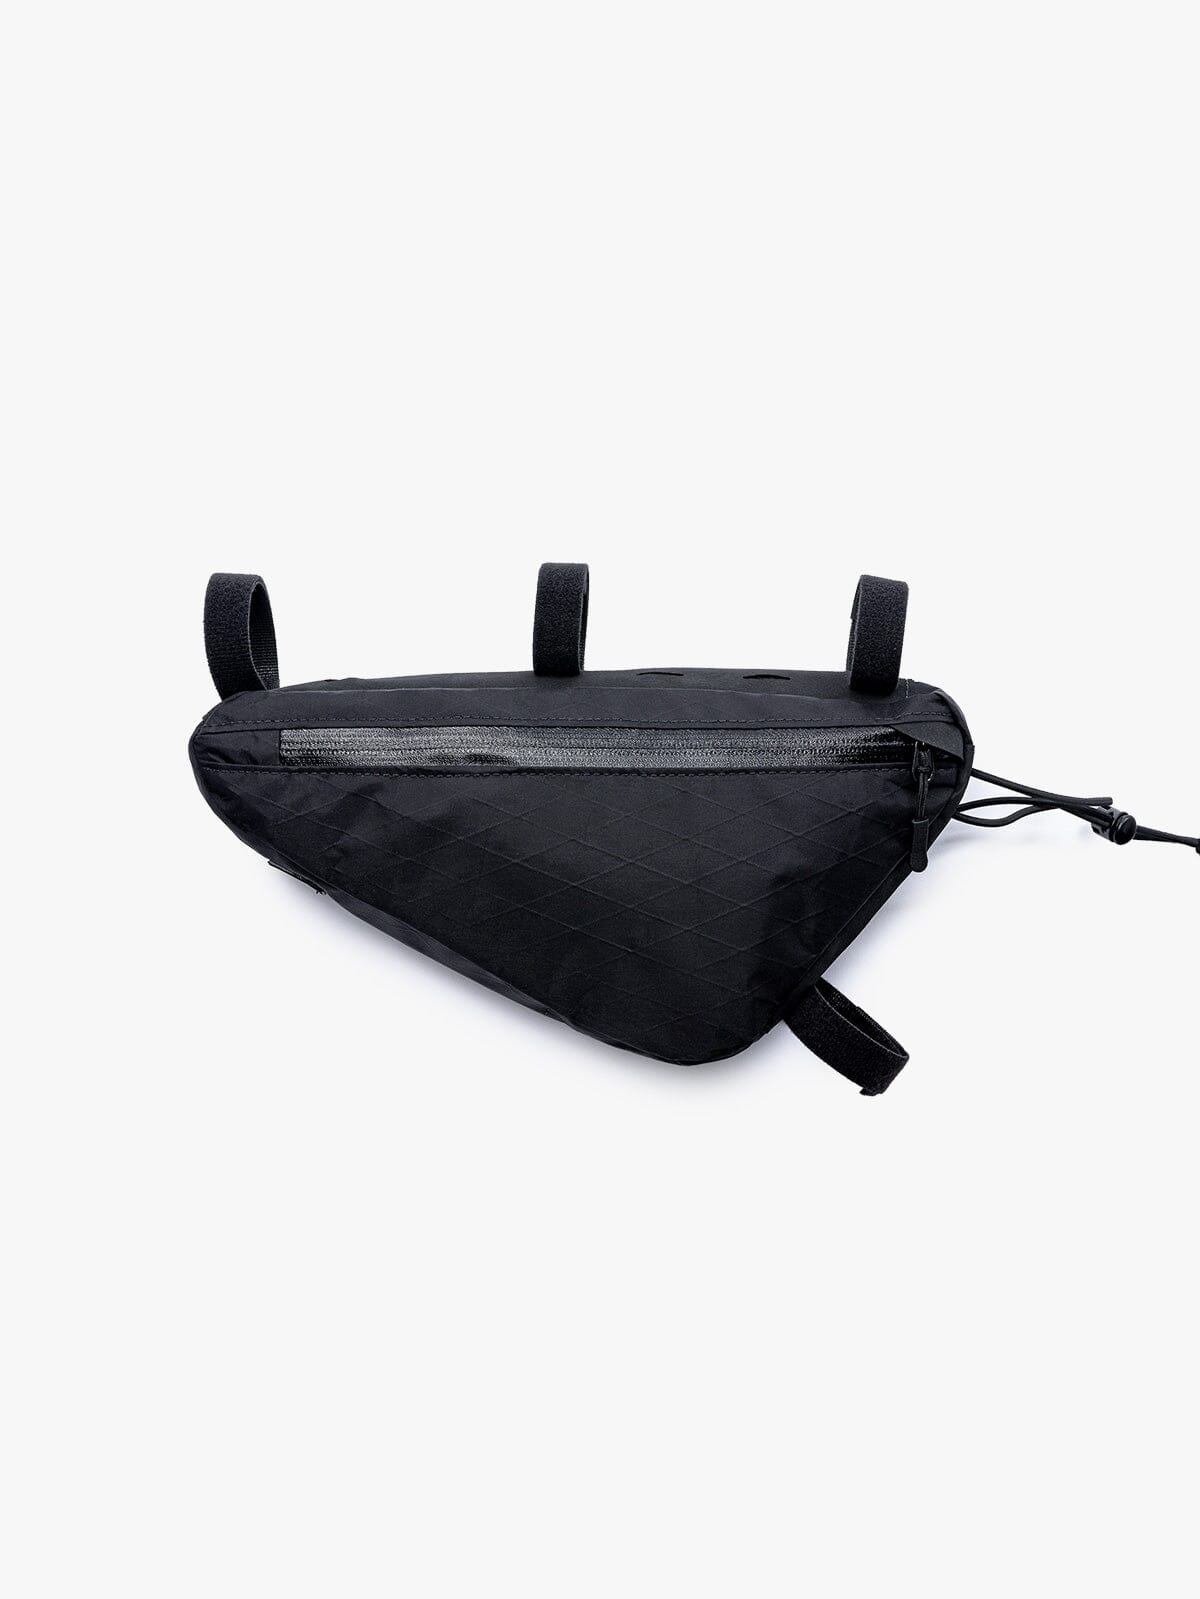 Slice Frame Bag by Mission Workshop - Bolsas resistentes a la intemperie y ropa técnica - San Francisco y Los Ángeles - Construidas para durar - Garantizadas para siempre